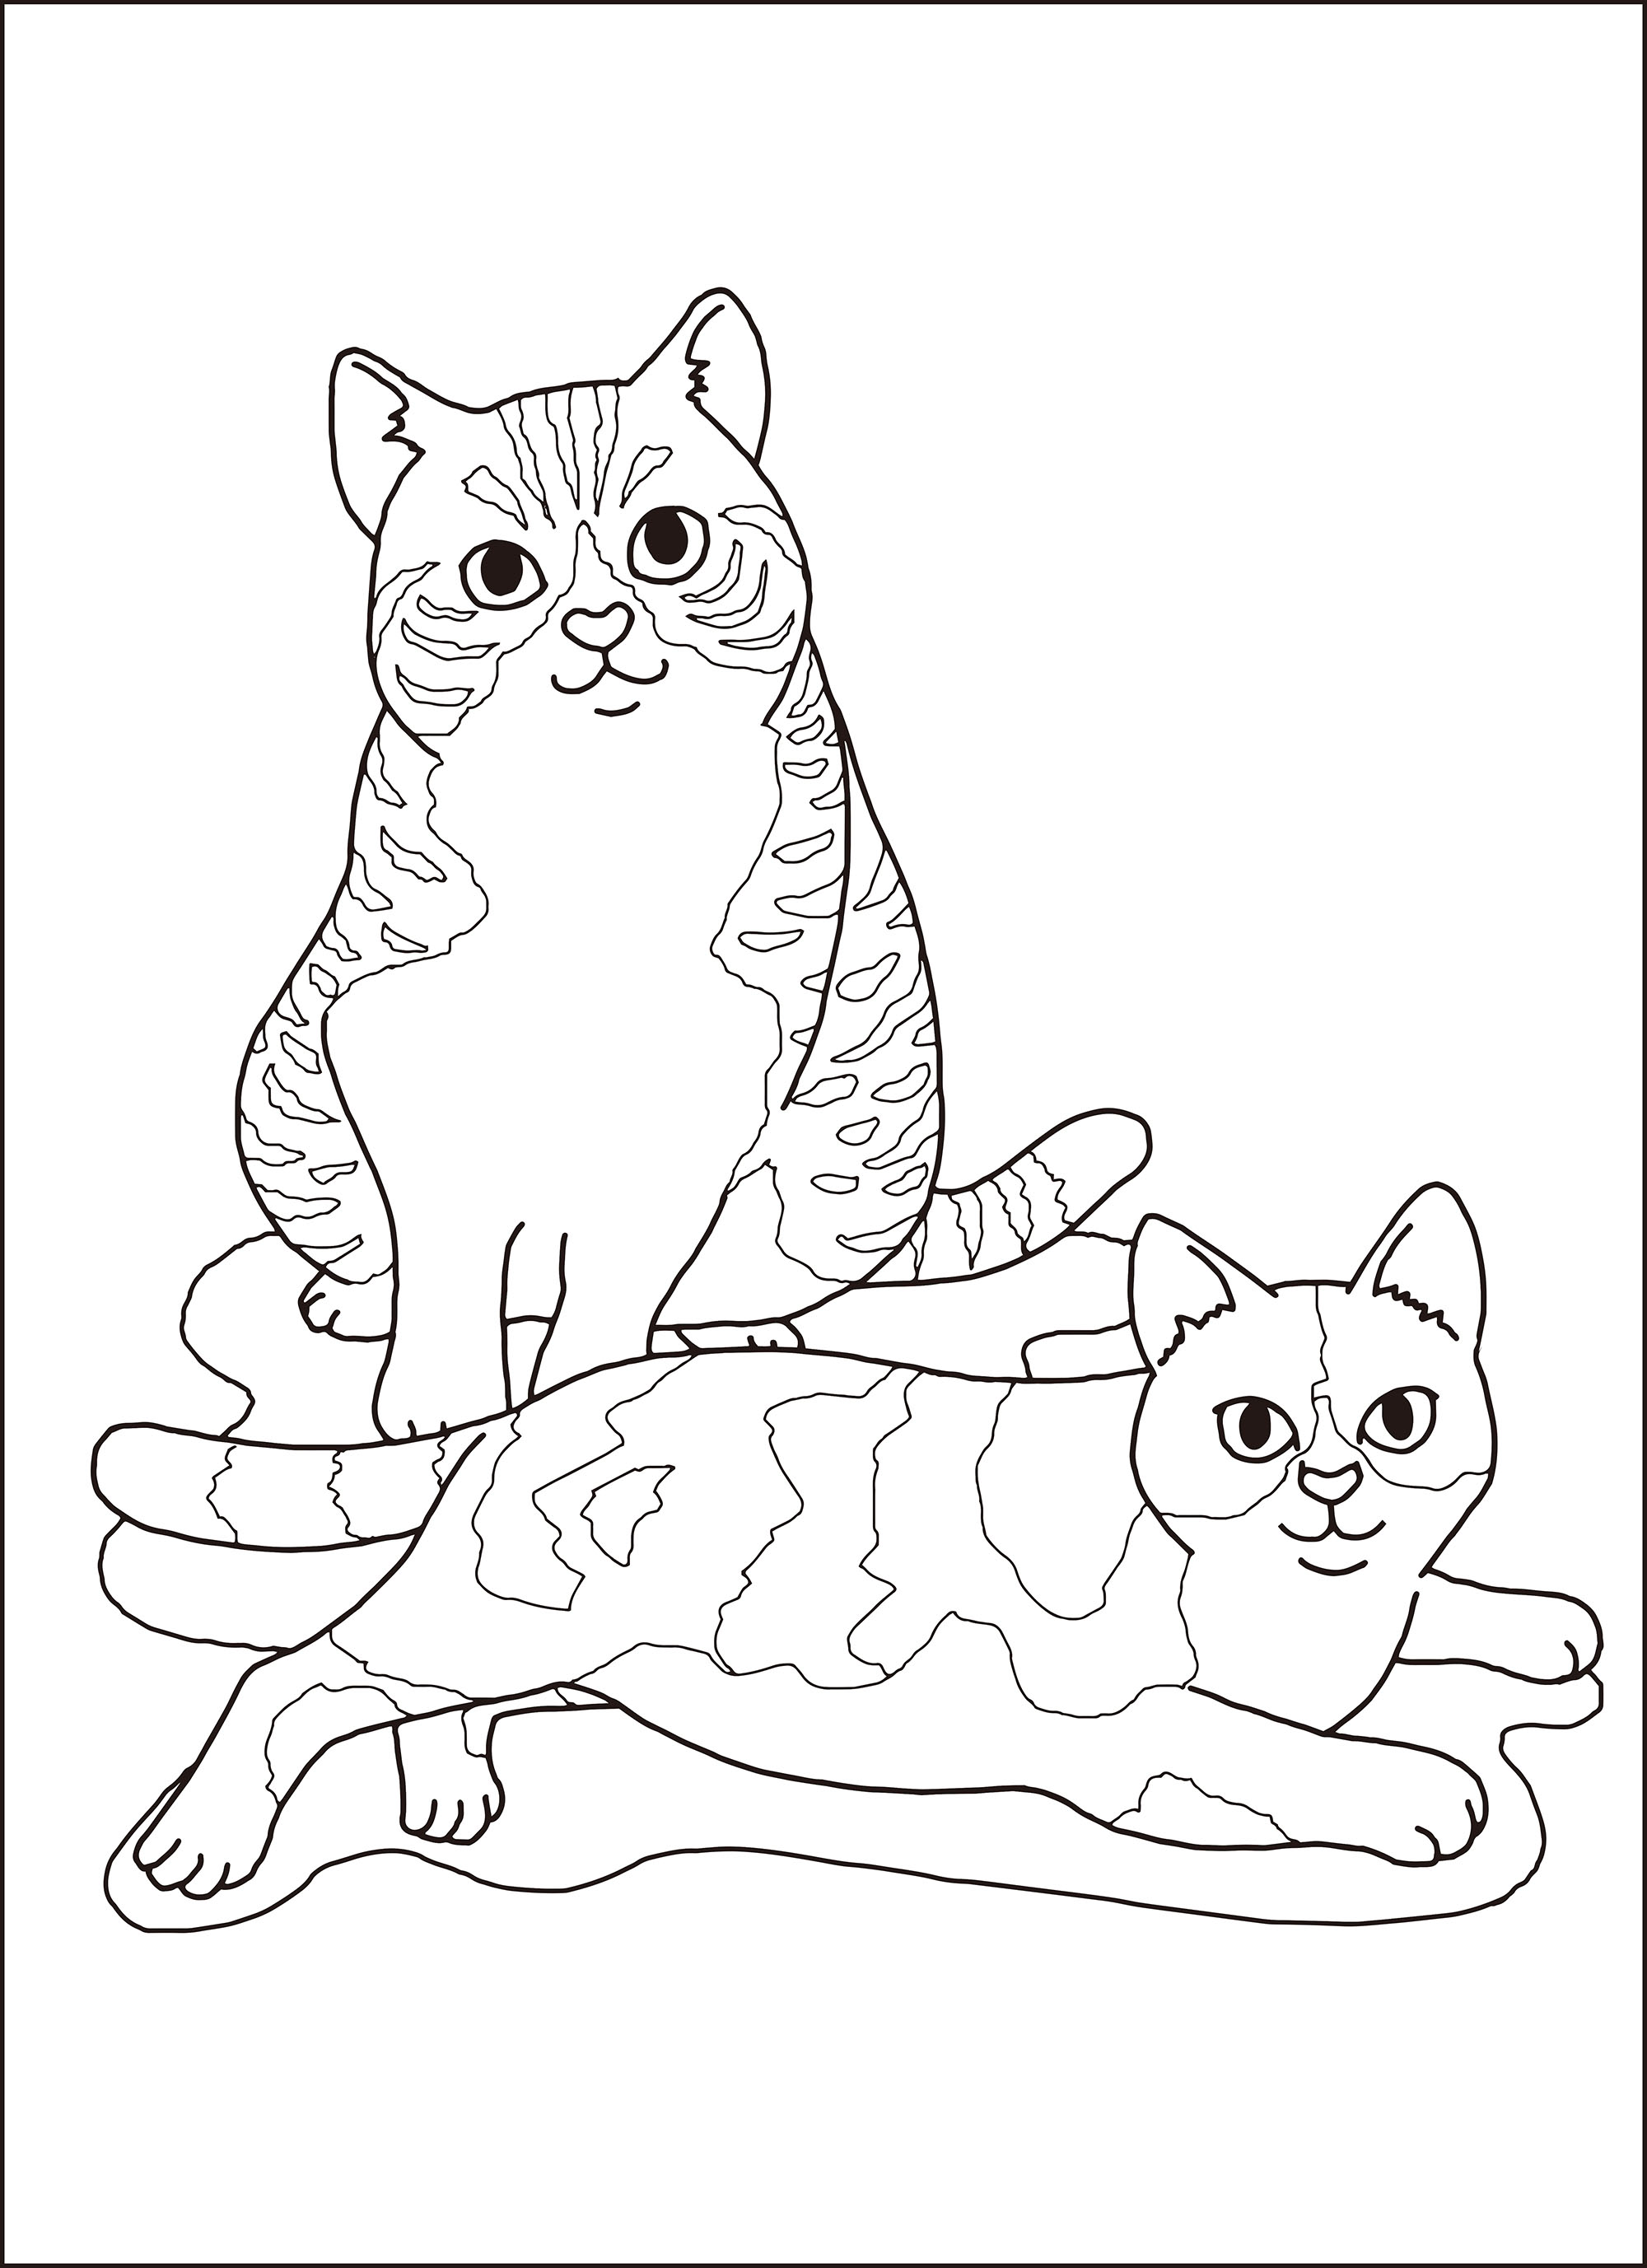 レク素材 猫 介護レク広場 レク素材やレクネタ 企画書 の無料ダウンロード